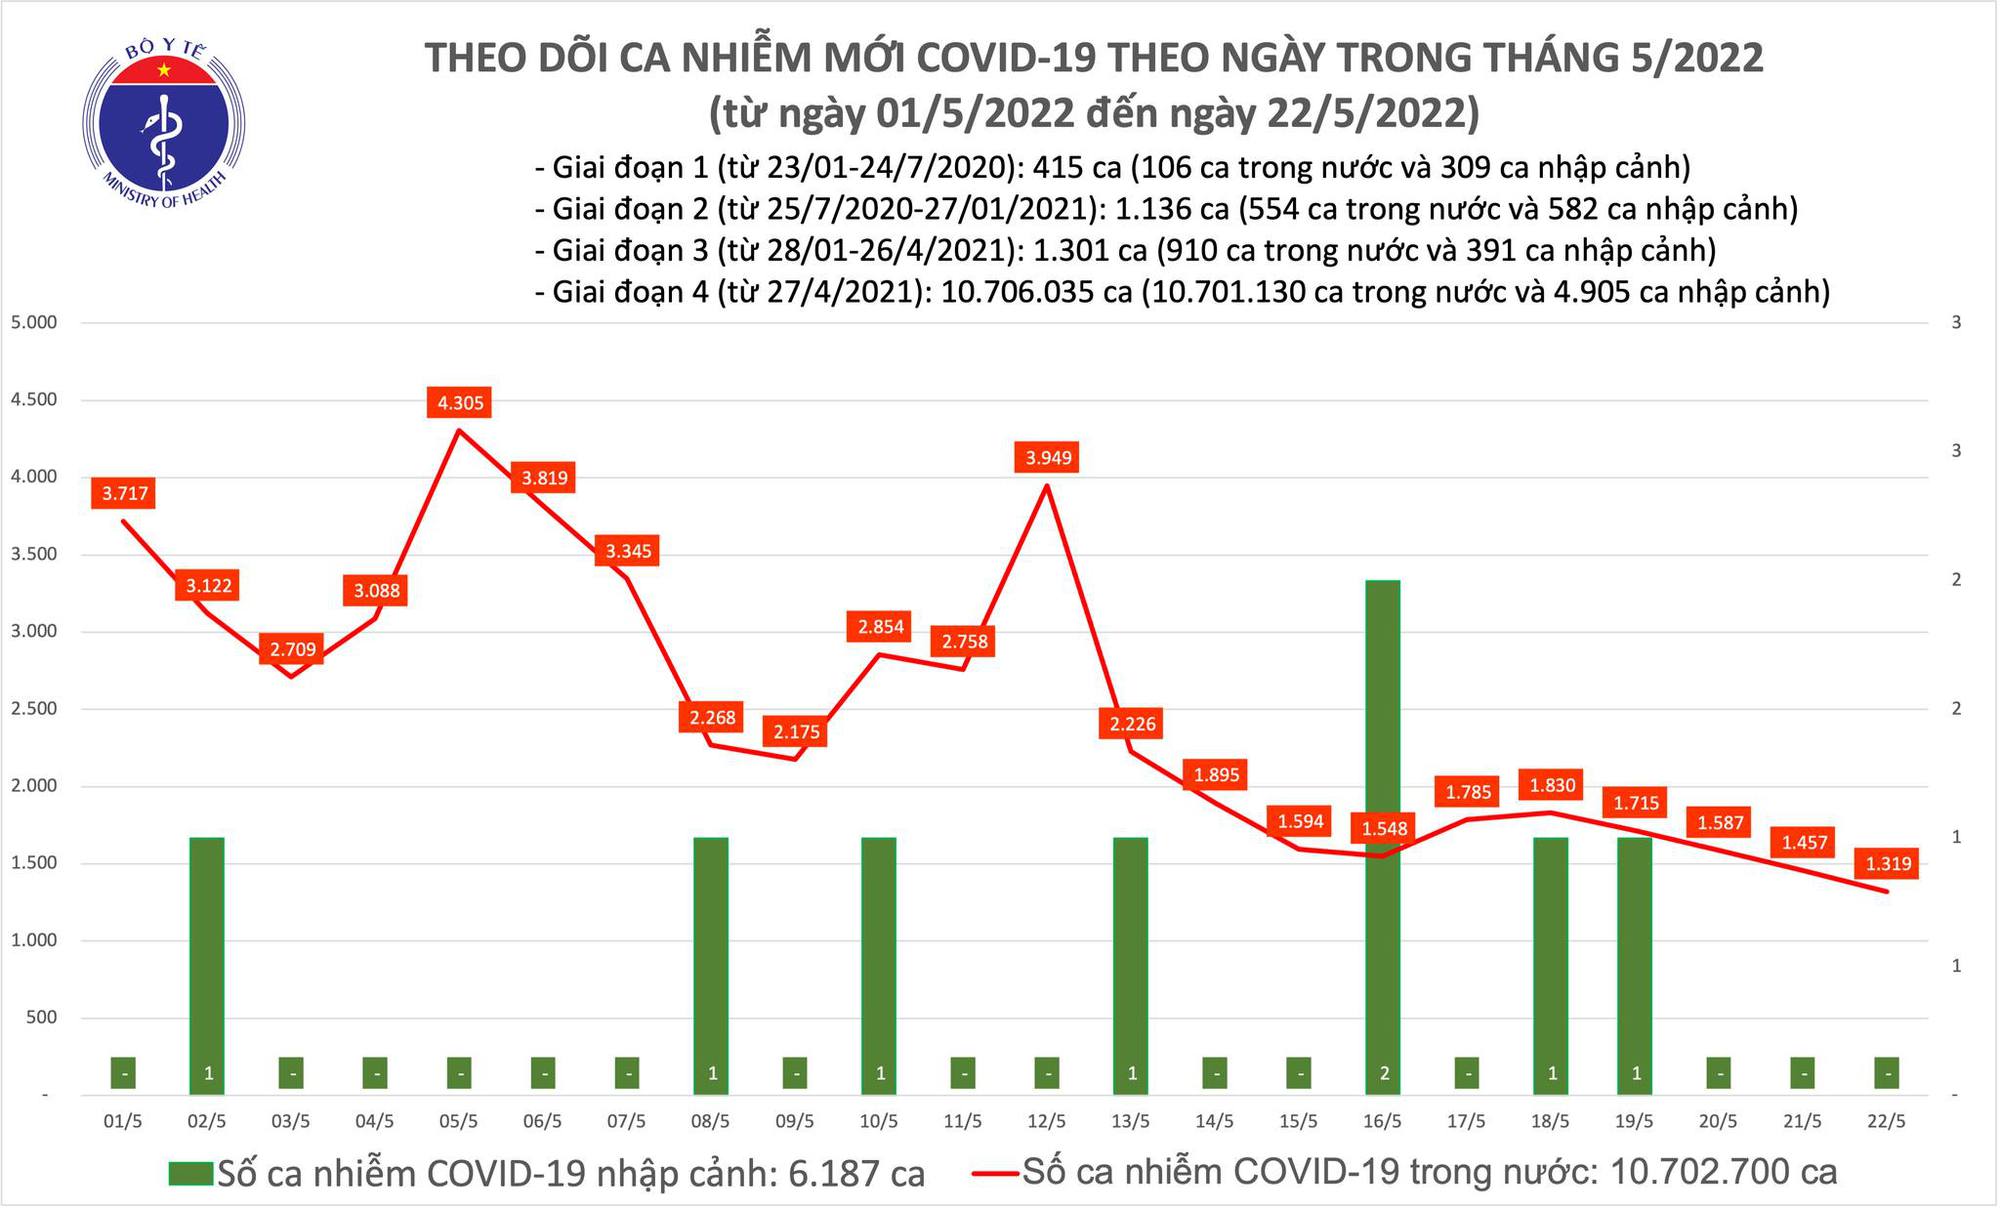 Ngày 22/5: Có 1.319 ca COVID-19 mới, số khỏi bệnh gấp 6 lần; không F0 nào tử vong - Ảnh 1.